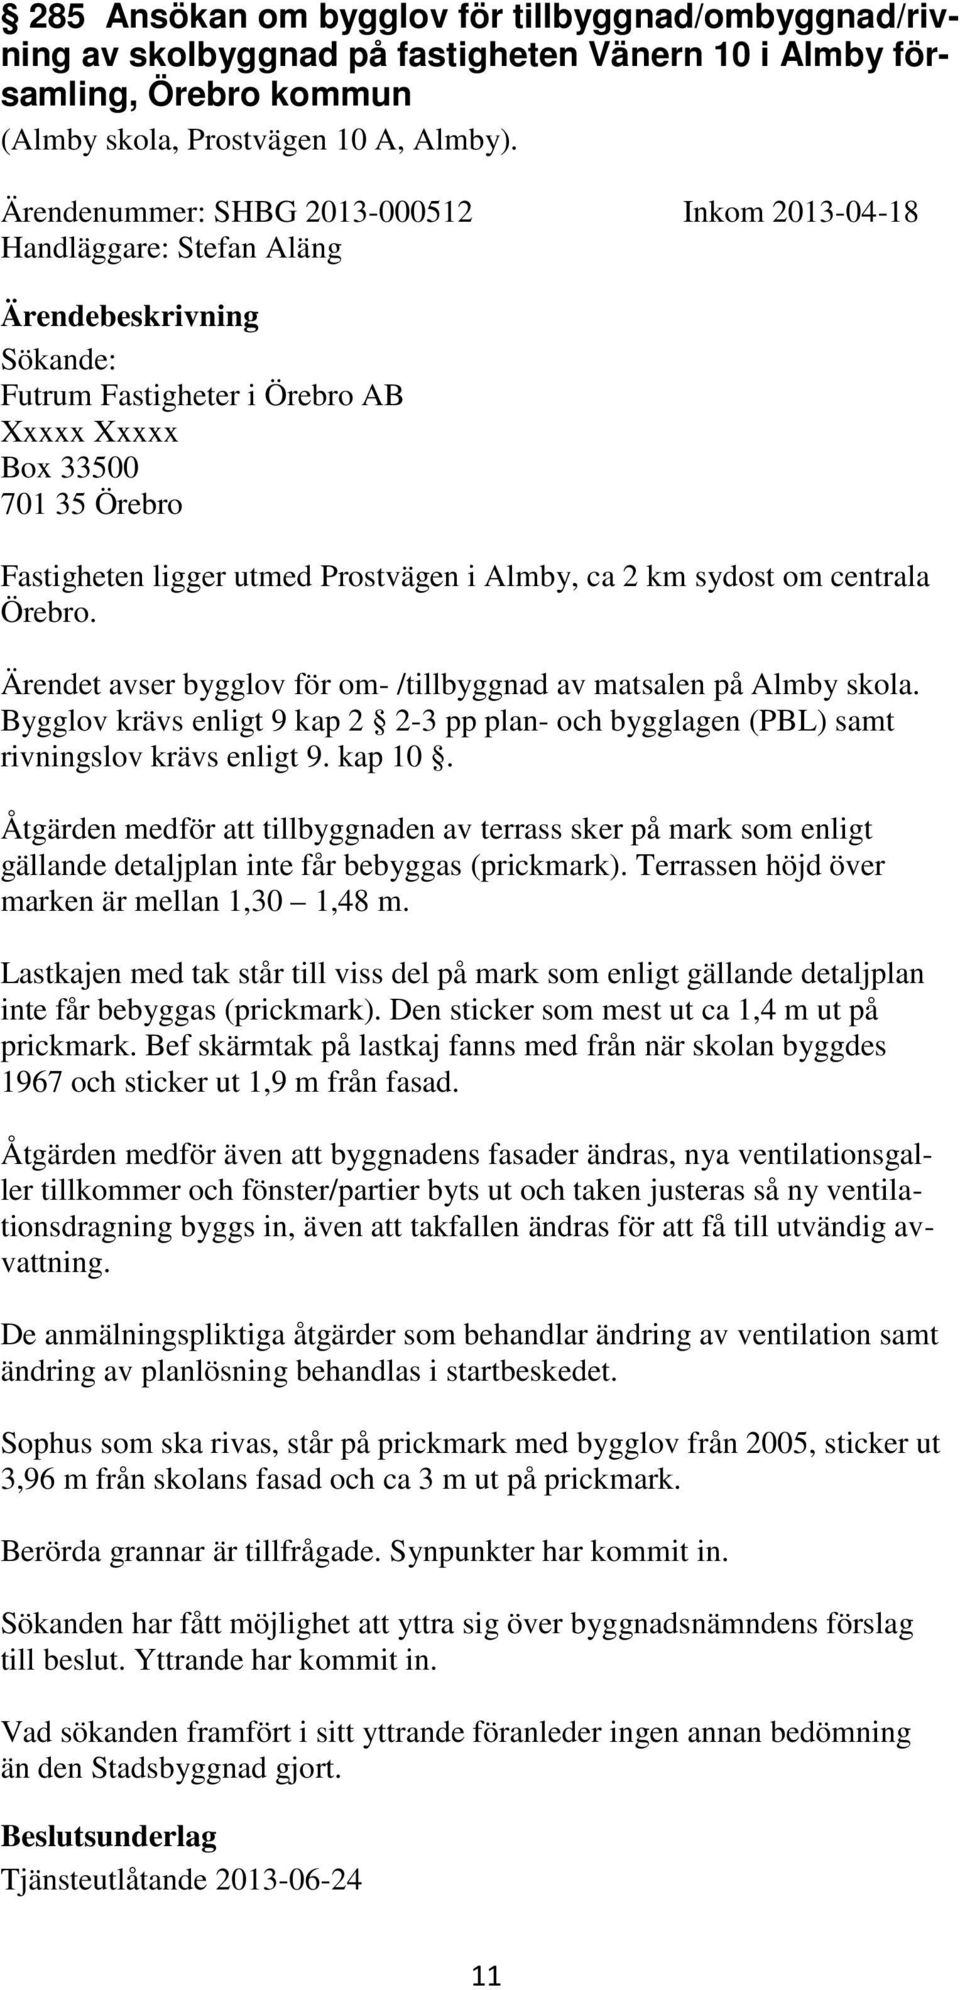 km sydost om centrala Örebro. Ärendet avser bygglov för om- /tillbyggnad av matsalen på Almby skola. Bygglov krävs enligt 9 kap 2 2-3 pp plan- och bygglagen (PBL) samt rivningslov krävs enligt 9.